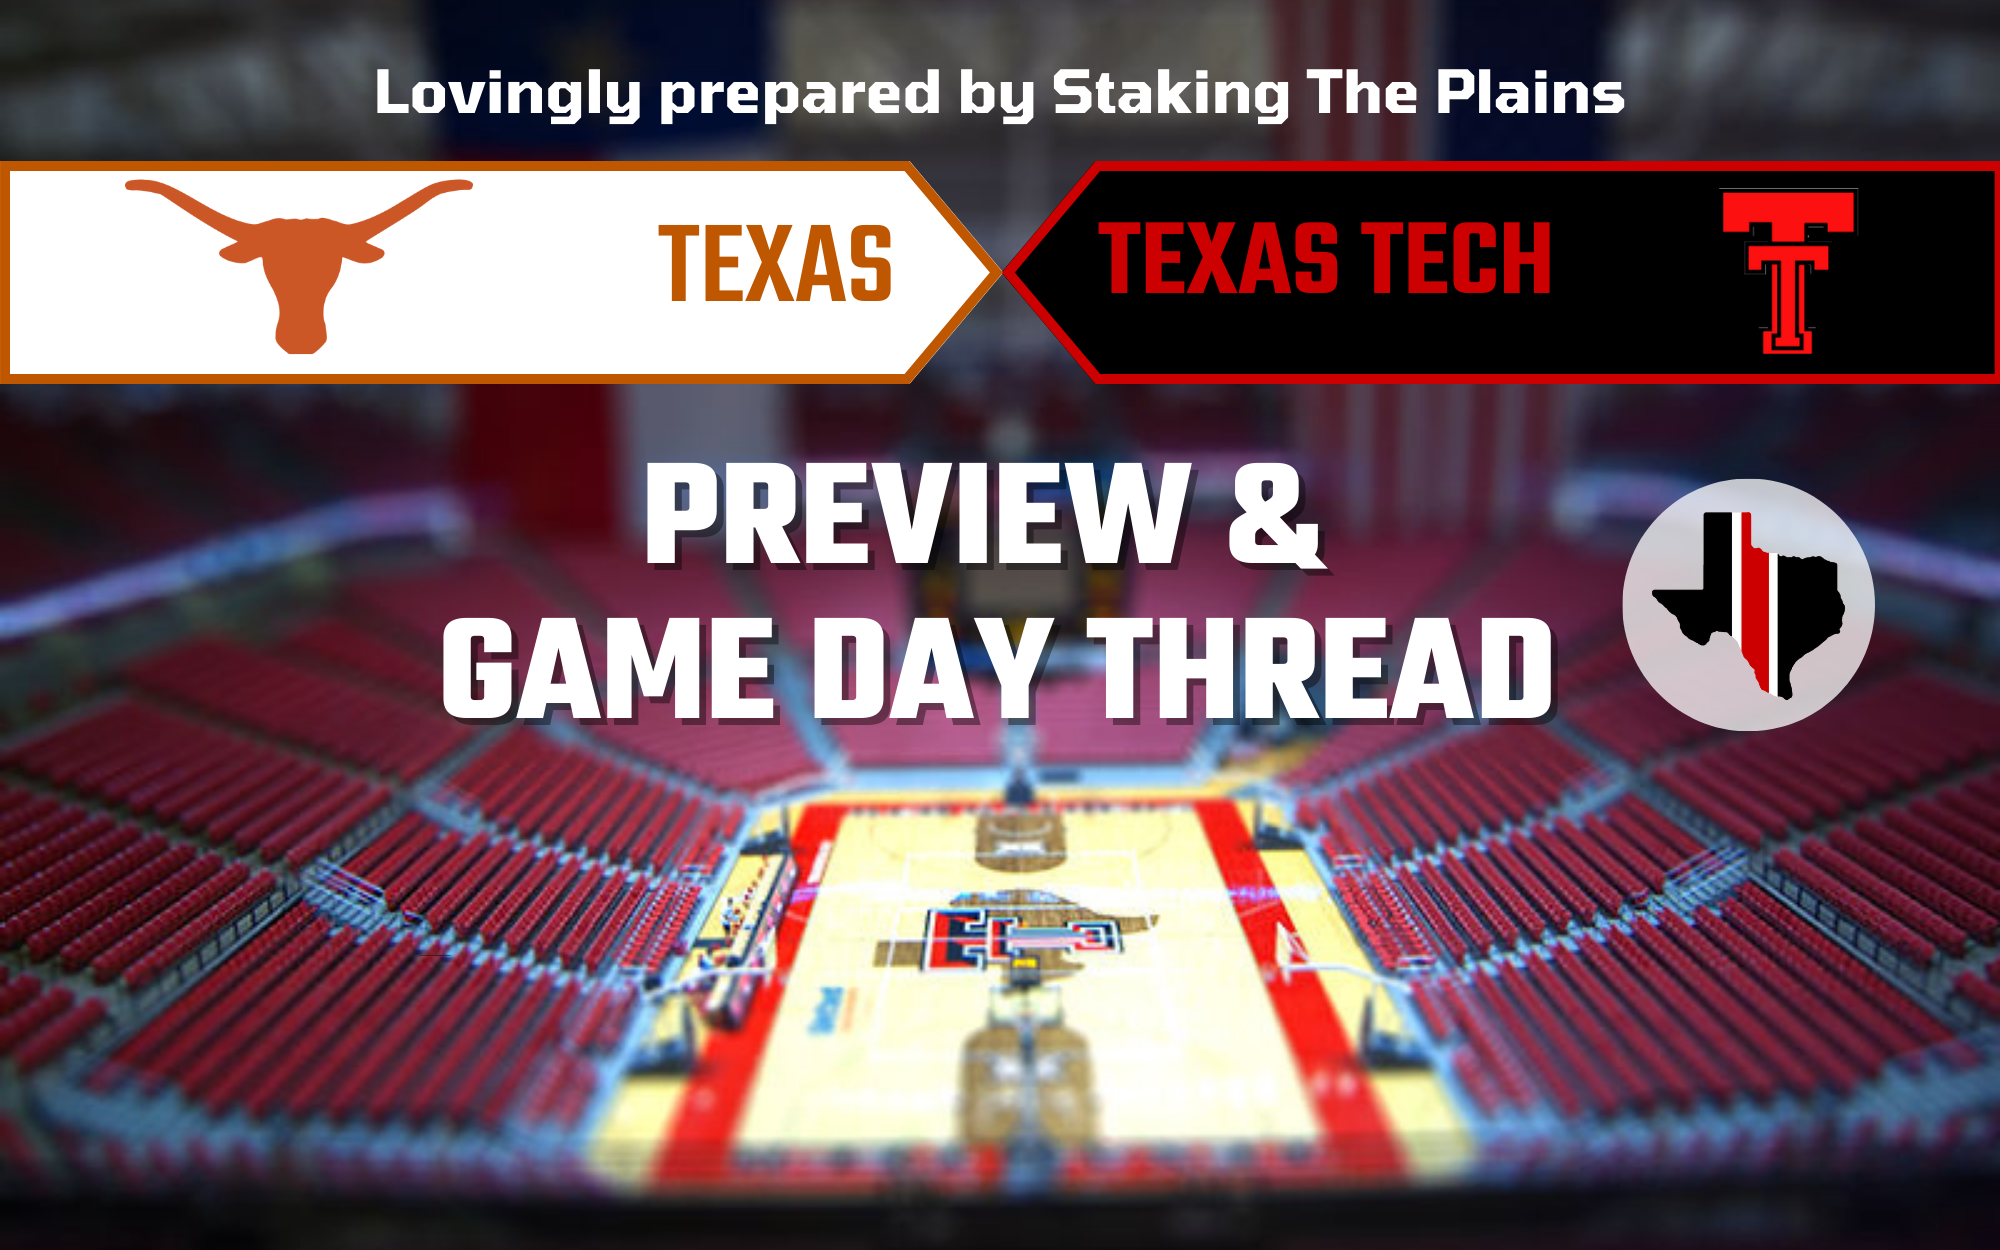 Preview & Game Day Thread: Texas vs. Texas Tech